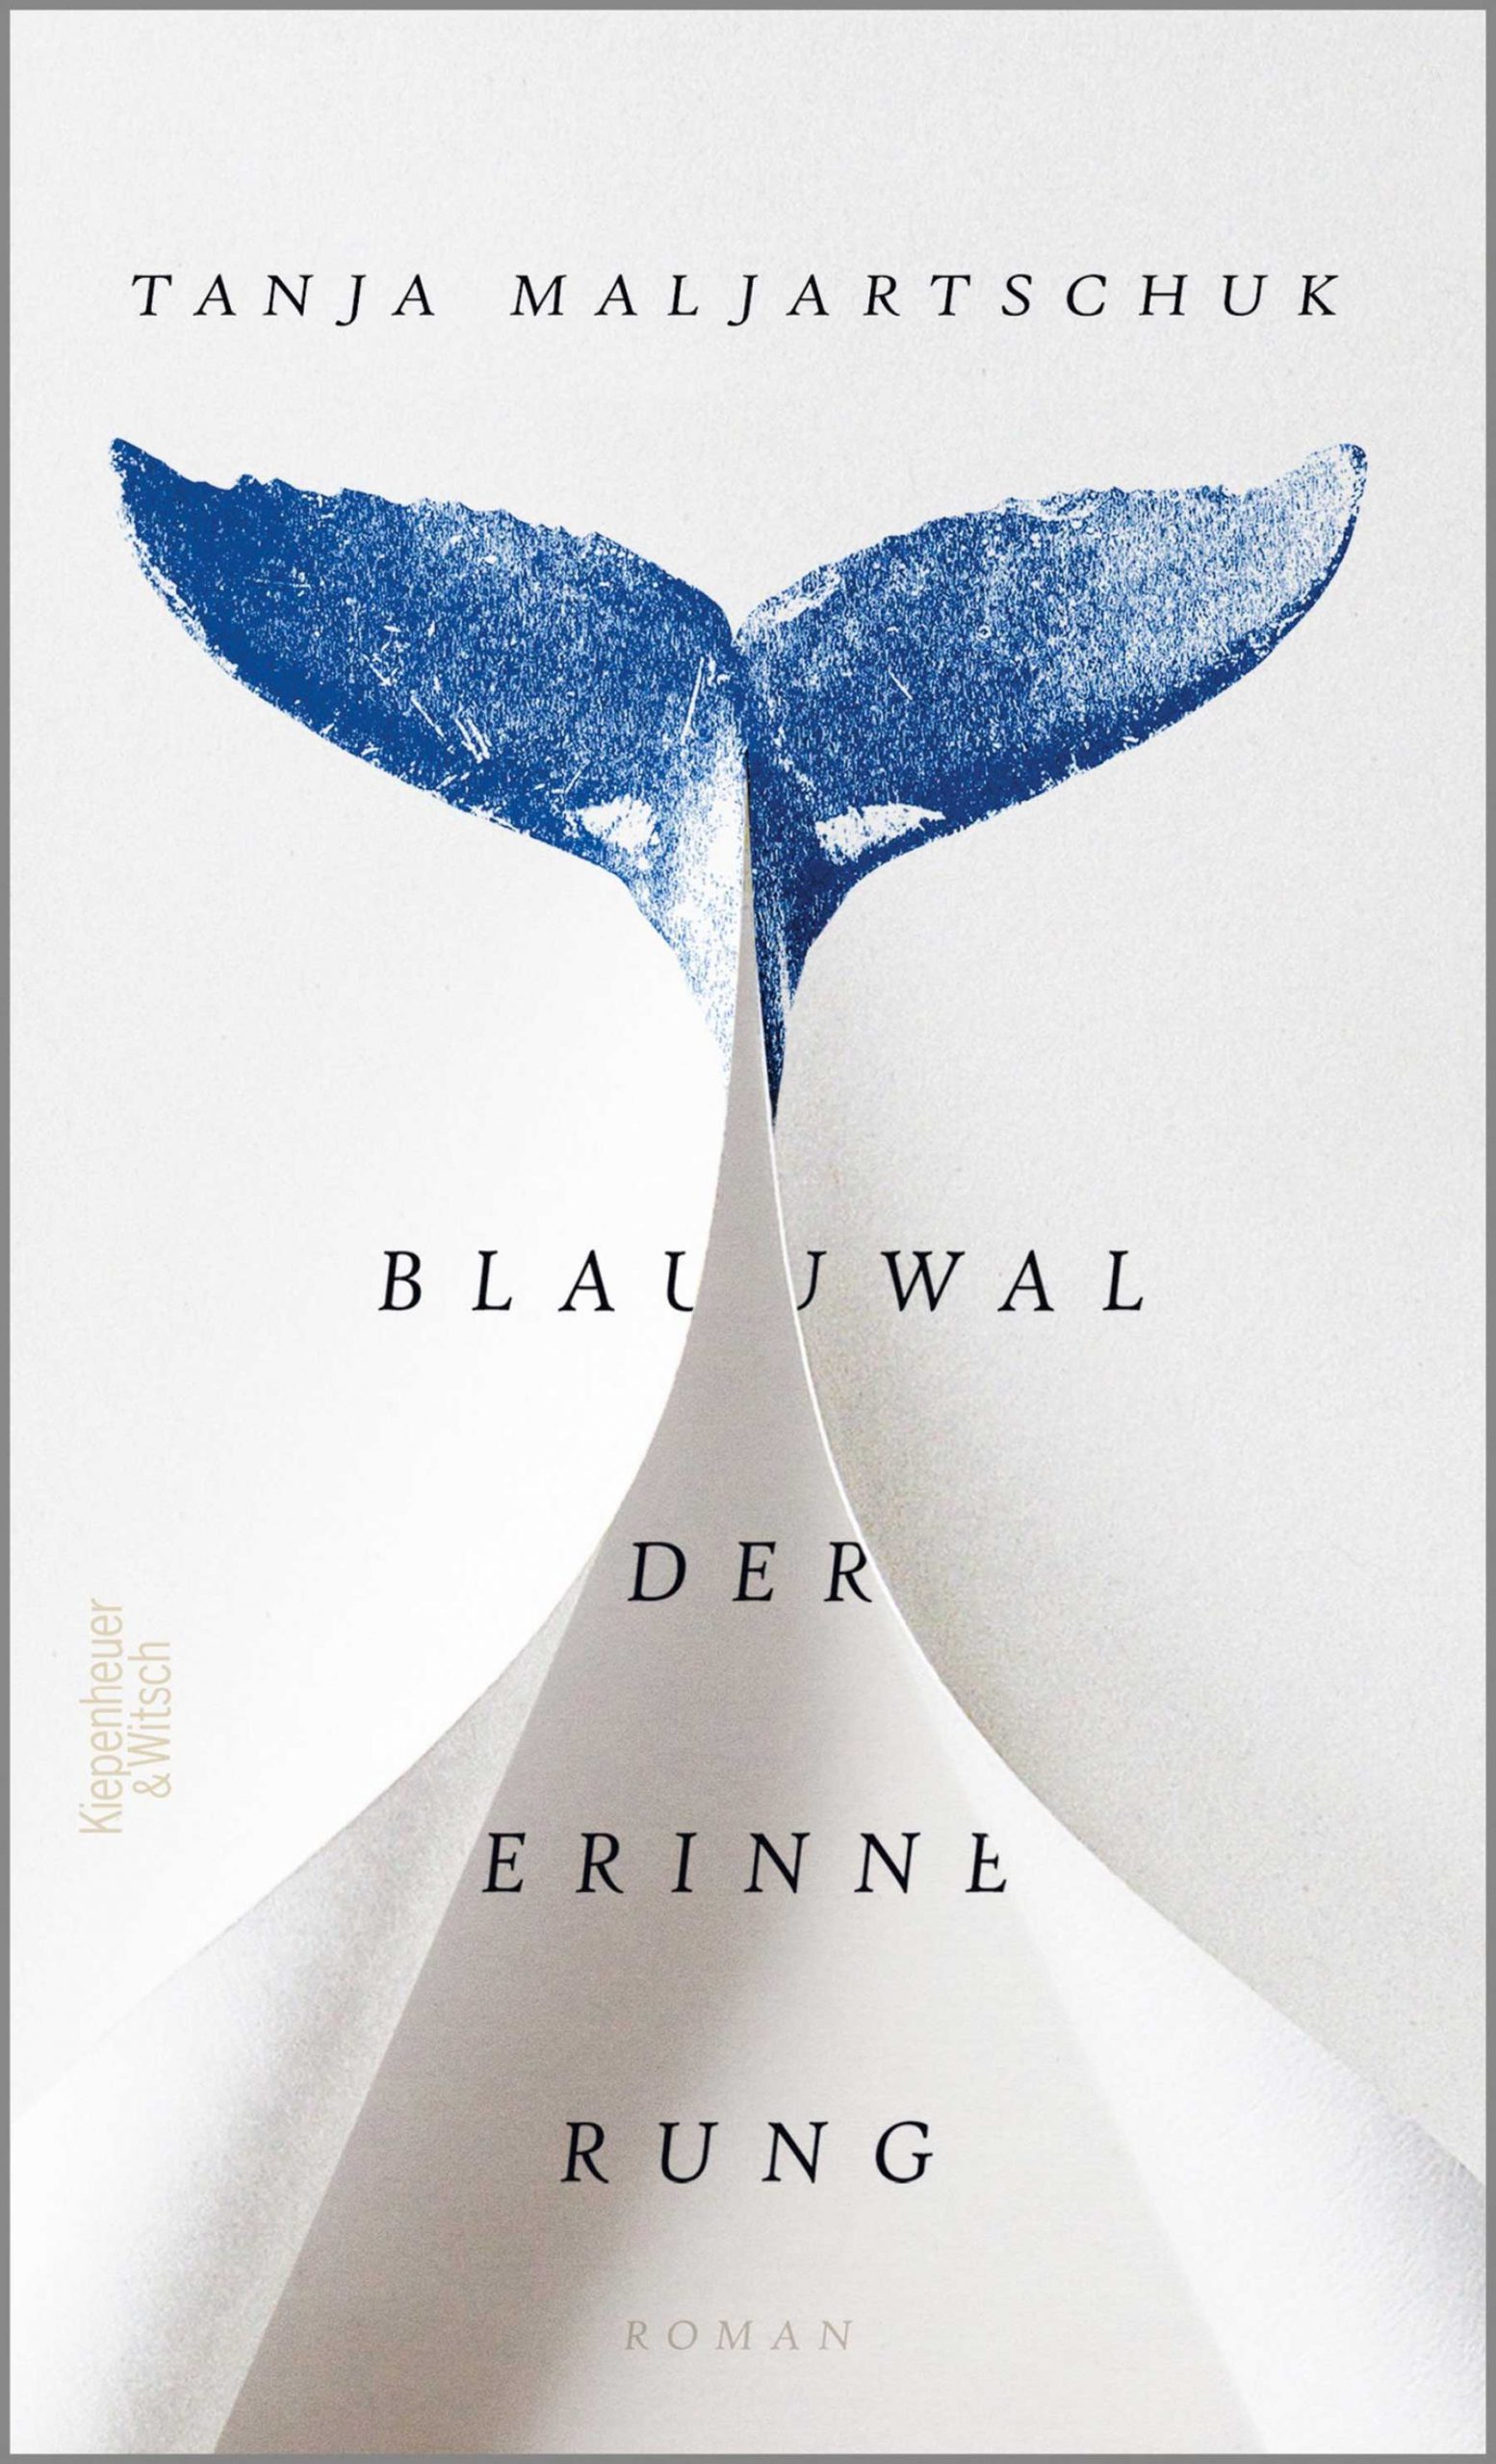 Ein Buch voller Melancholie, Heiterkeit und Poesie: Tanja Maljartschuks Meisterwerk „Blauwal der Erinnerung“. Foto: © KIWI-VERLAG